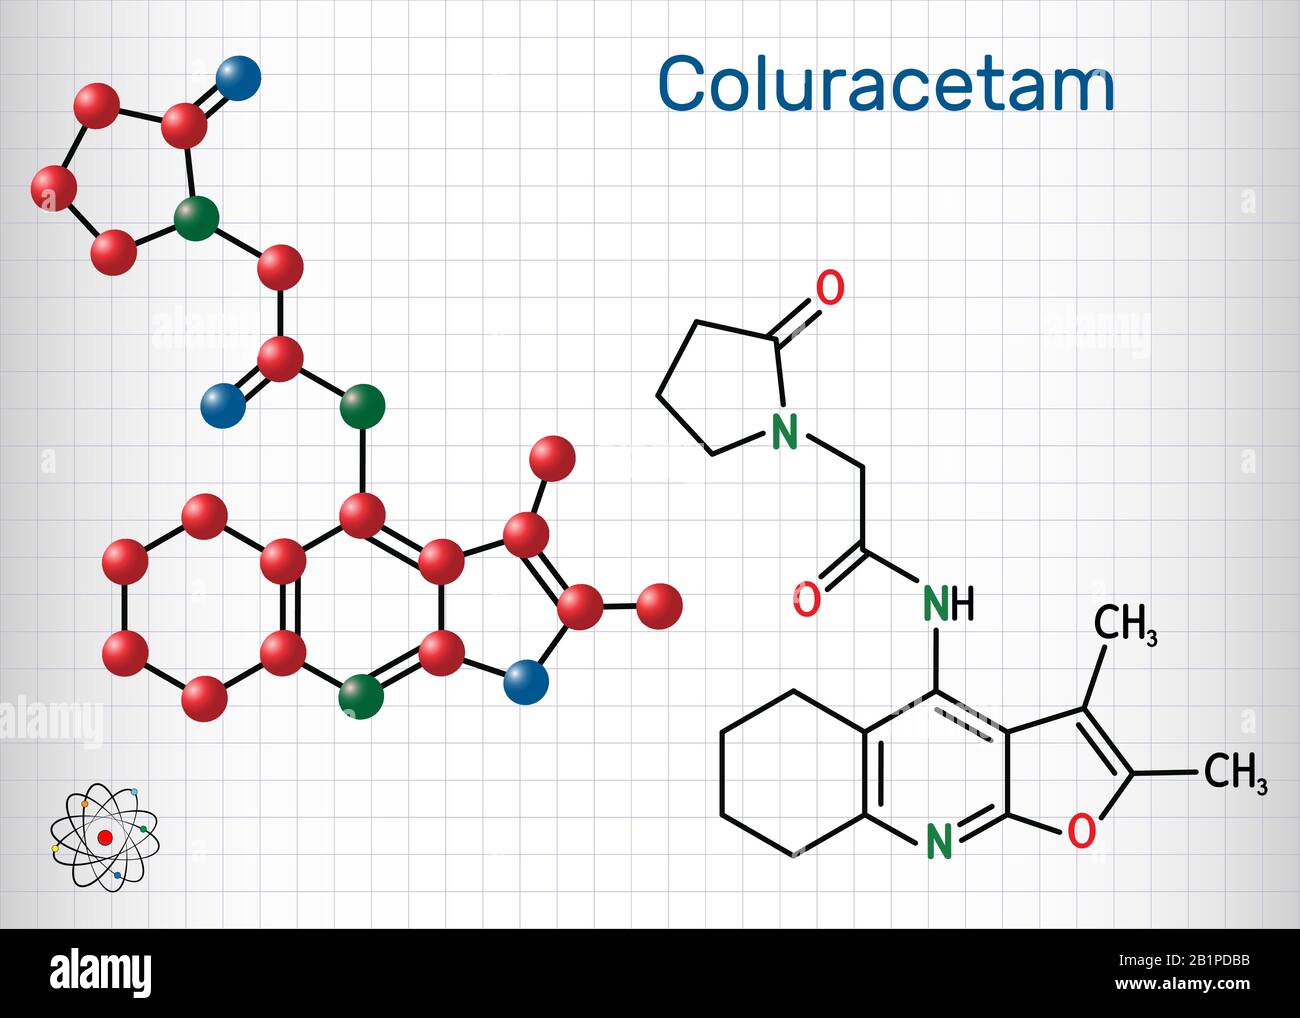 Coluracetam, BCI-540, C19H23N3O3-Molekül. Sie ist ein nootroper Vertreter der Familie Rennbahn. Strukturelle chemische Formel und Molekularmodell. Blatt von Stock Vektor